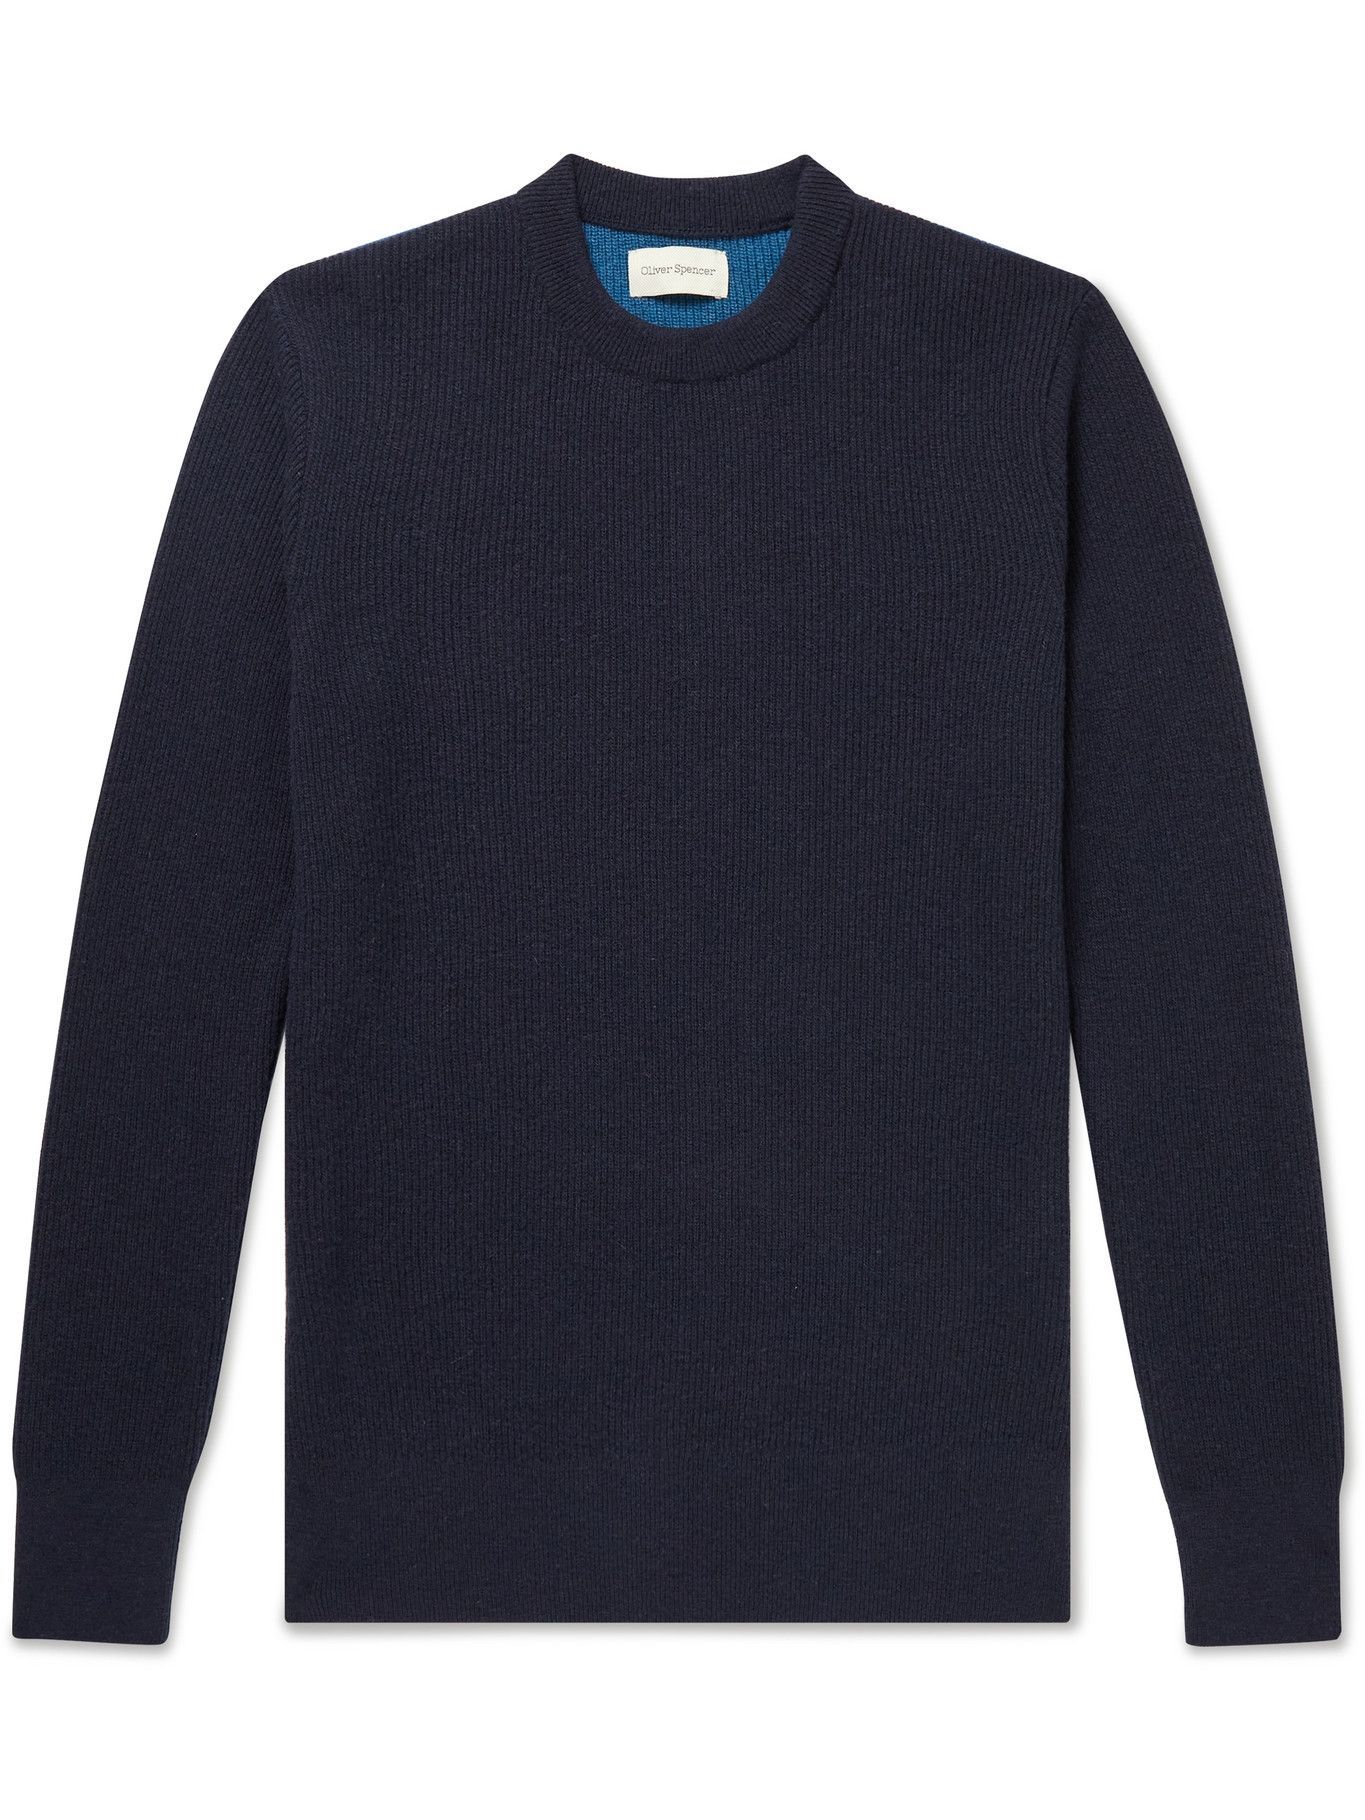 Oliver Spencer - Blenheim Striped Wool Sweater - Blue